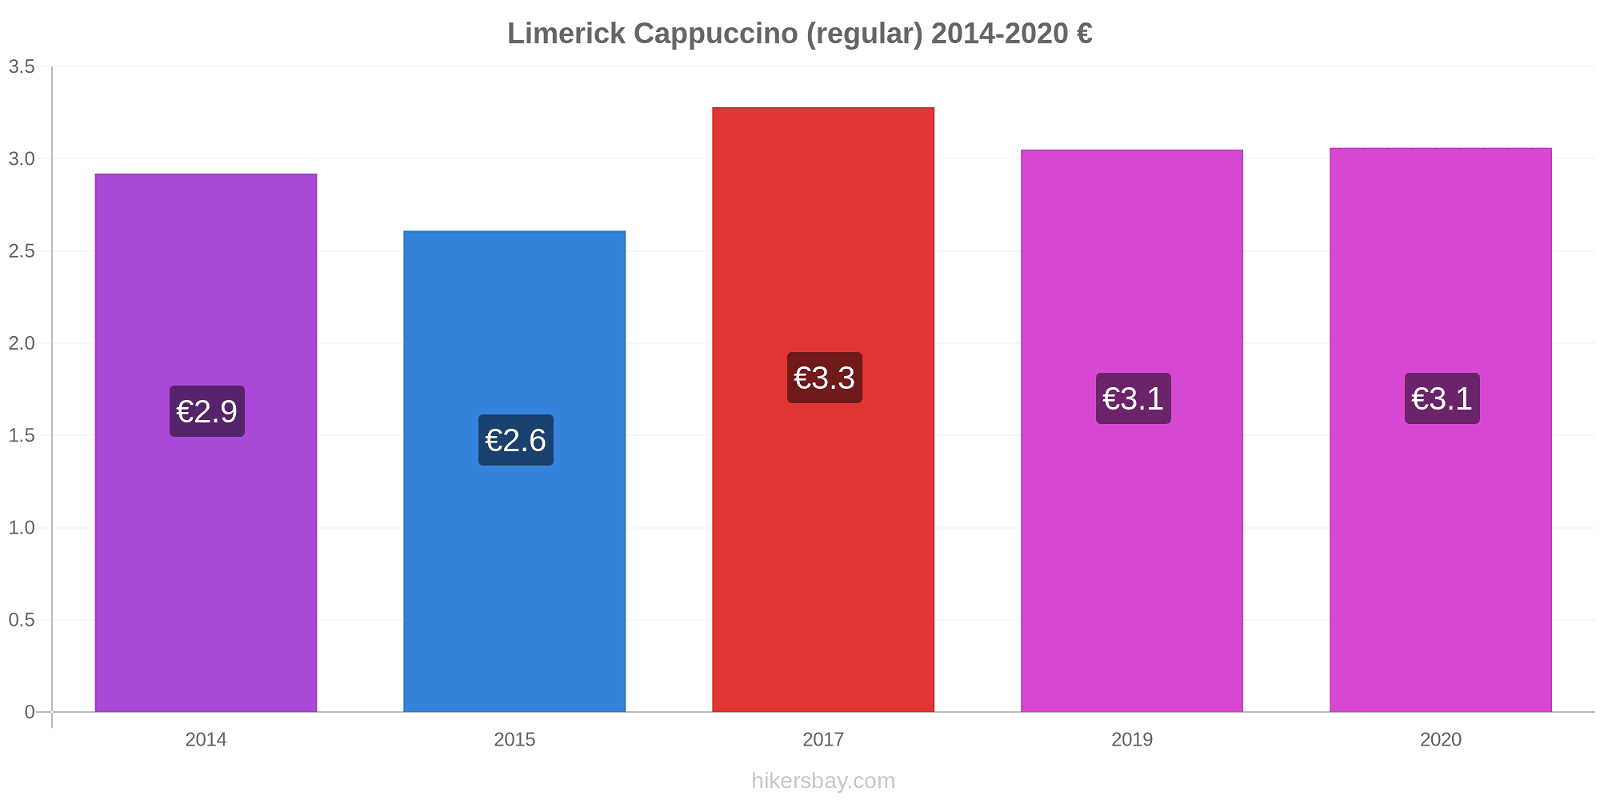 Limerick variação de preço Capuccino (regular) hikersbay.com